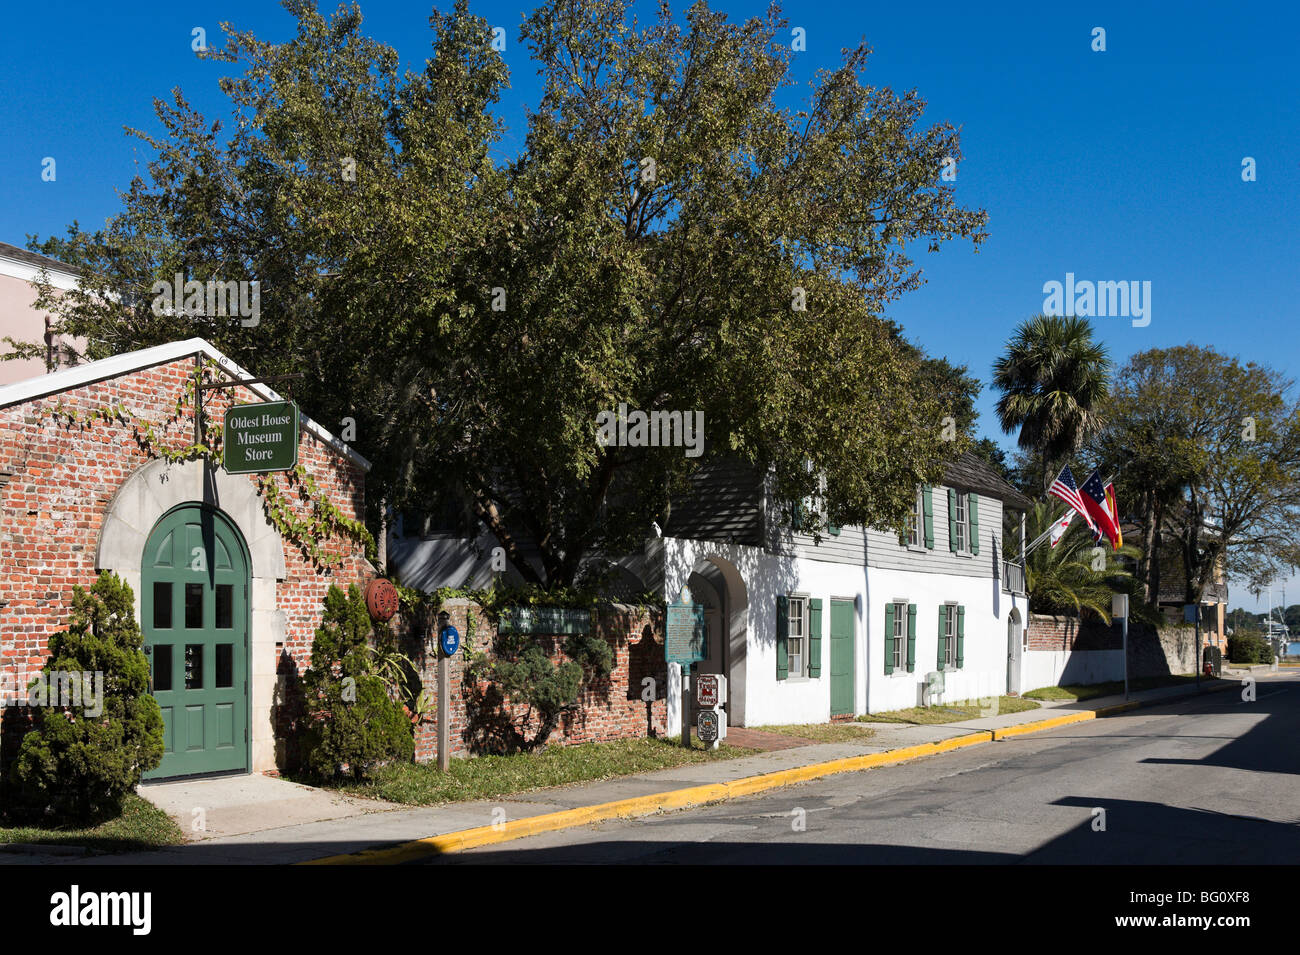 La casa más antigua (González-Alvarez House) y la Tienda del Museo, Calle San Francisco, San Agustín, Florida, EE.UU. Foto de stock